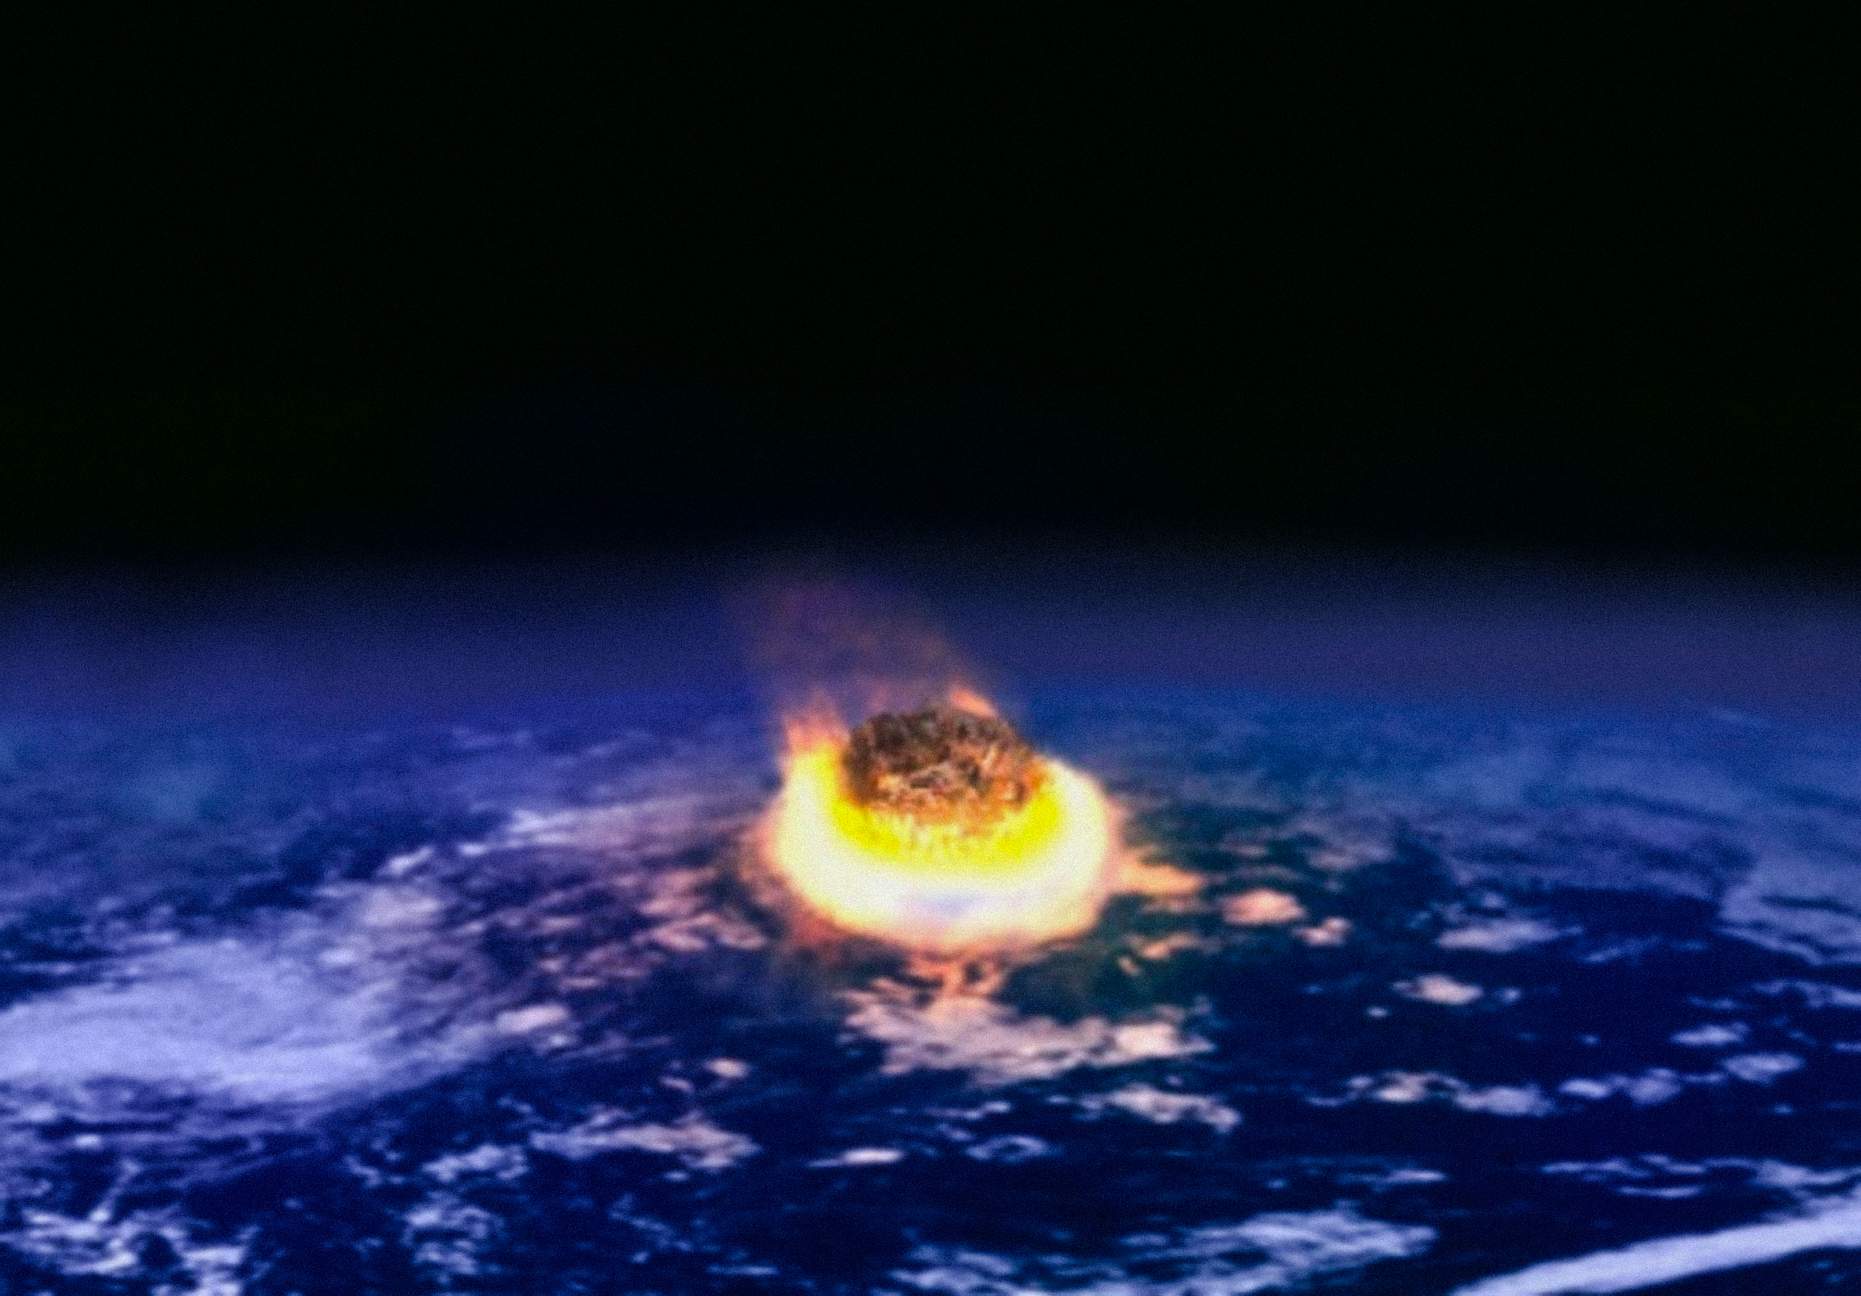 Para Zoltan Galántai, uma escala de classificação das civilizações deveria basear-se na sua capacidade de sobreviver a catástrofes, particularmente as de origem cósmica, como o impacto de um asteróide.